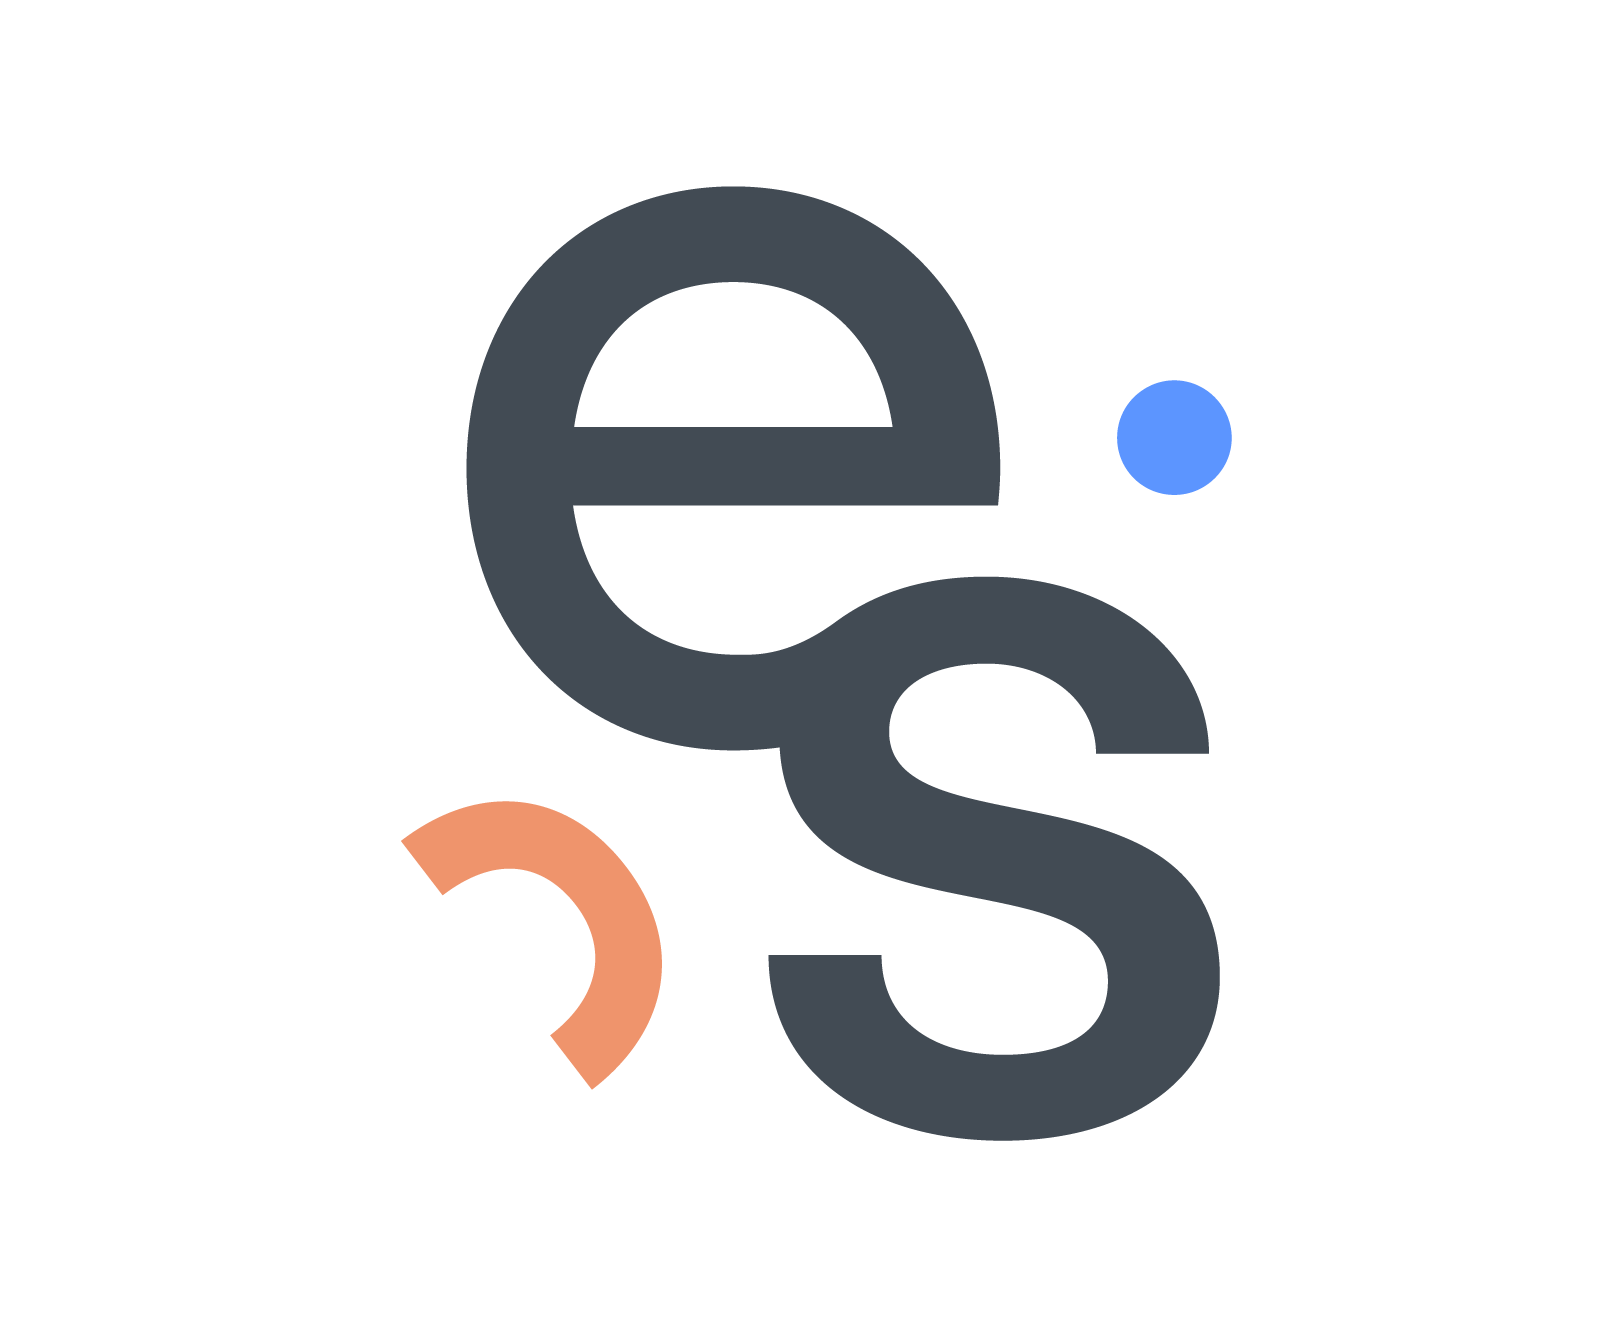 Em Storey_Logo